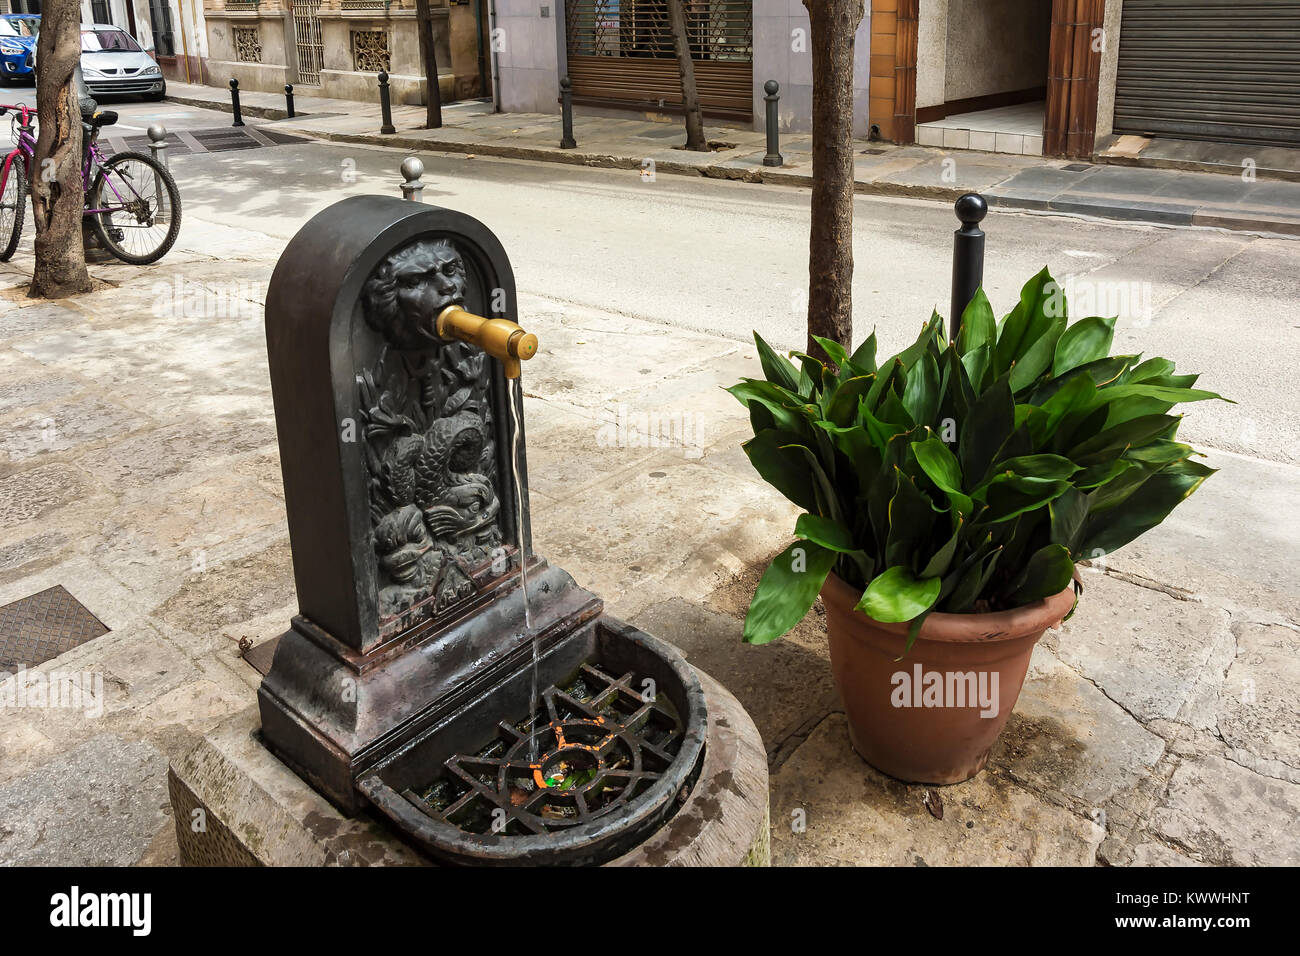 L'Espagne, Blanes - 14 septembre 2017 : un robinet avec de l'eau potable  dans une rue et un grand pot de fleurs Photo Stock - Alamy